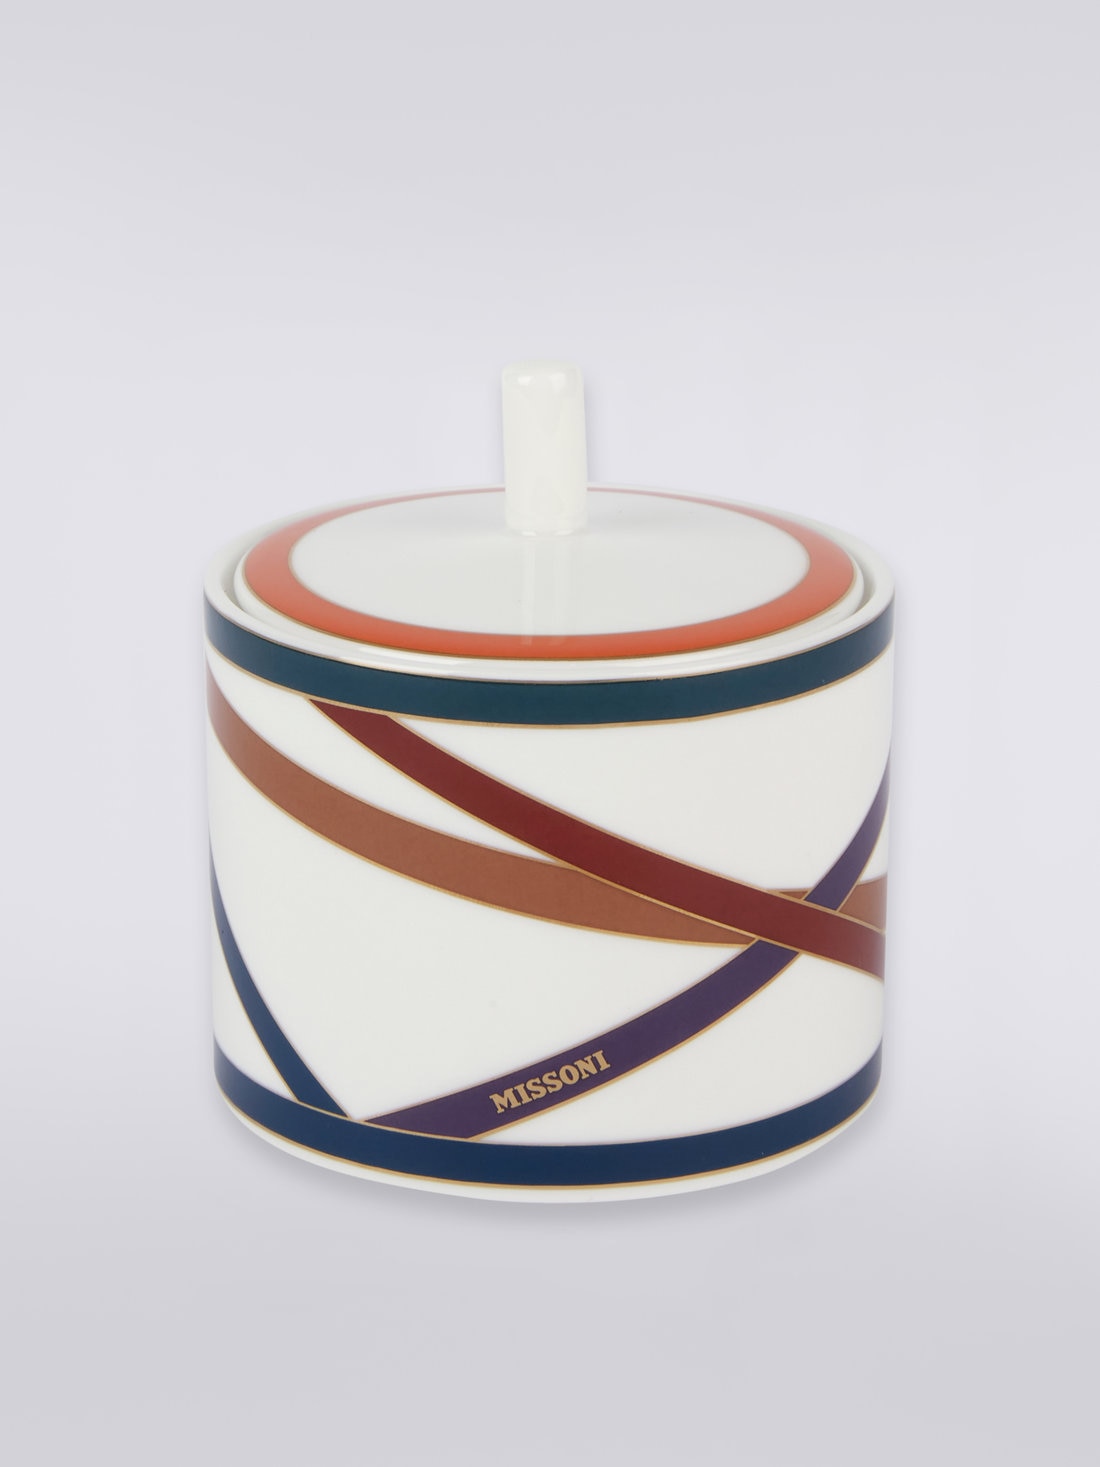 Nastri sugar bowl , Multicoloured  - 8051575977602 - 0